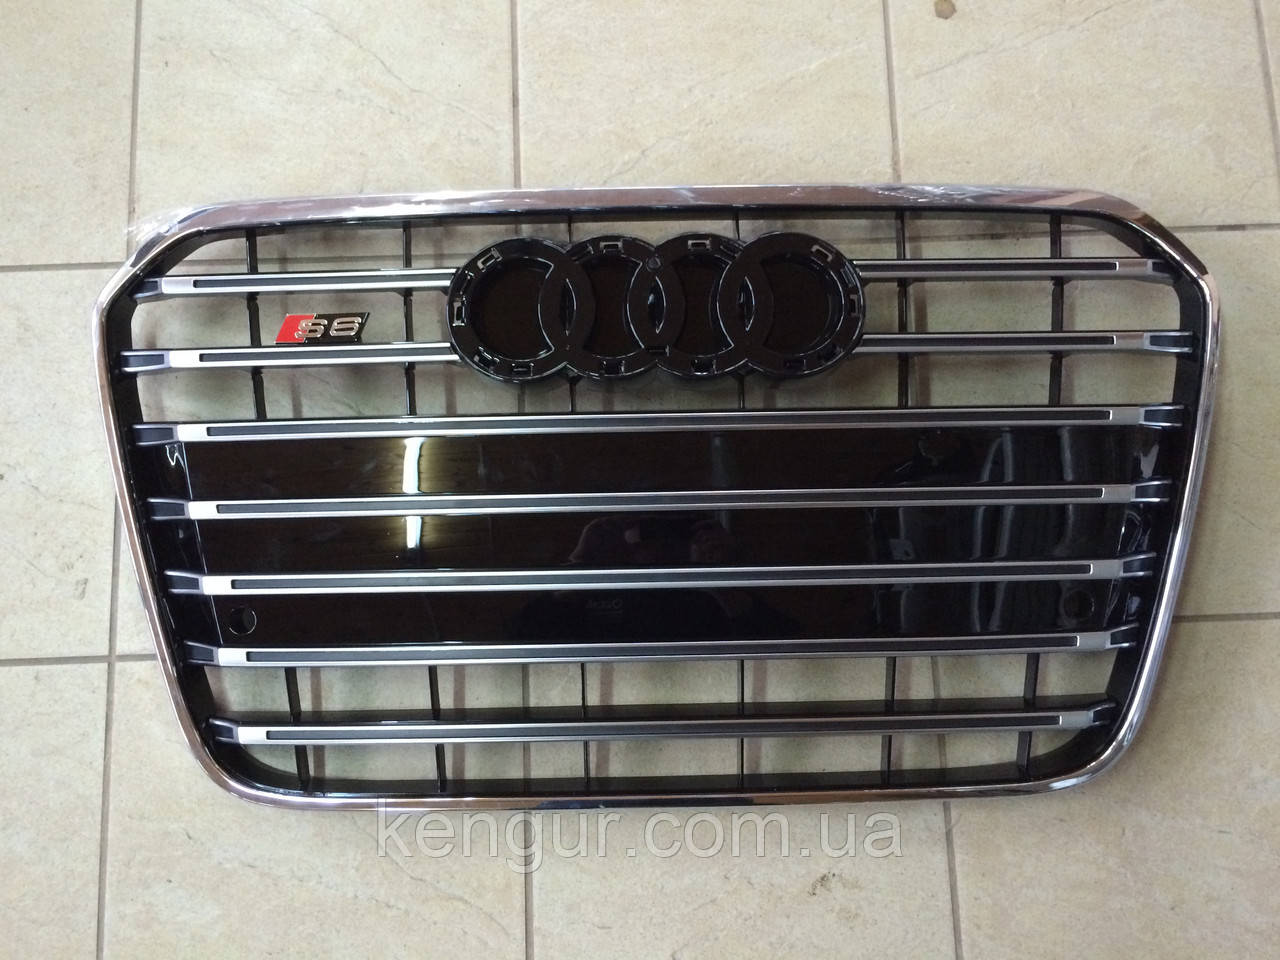 

Решетка радиатора Audi A6 C7 2011-2014, Черный